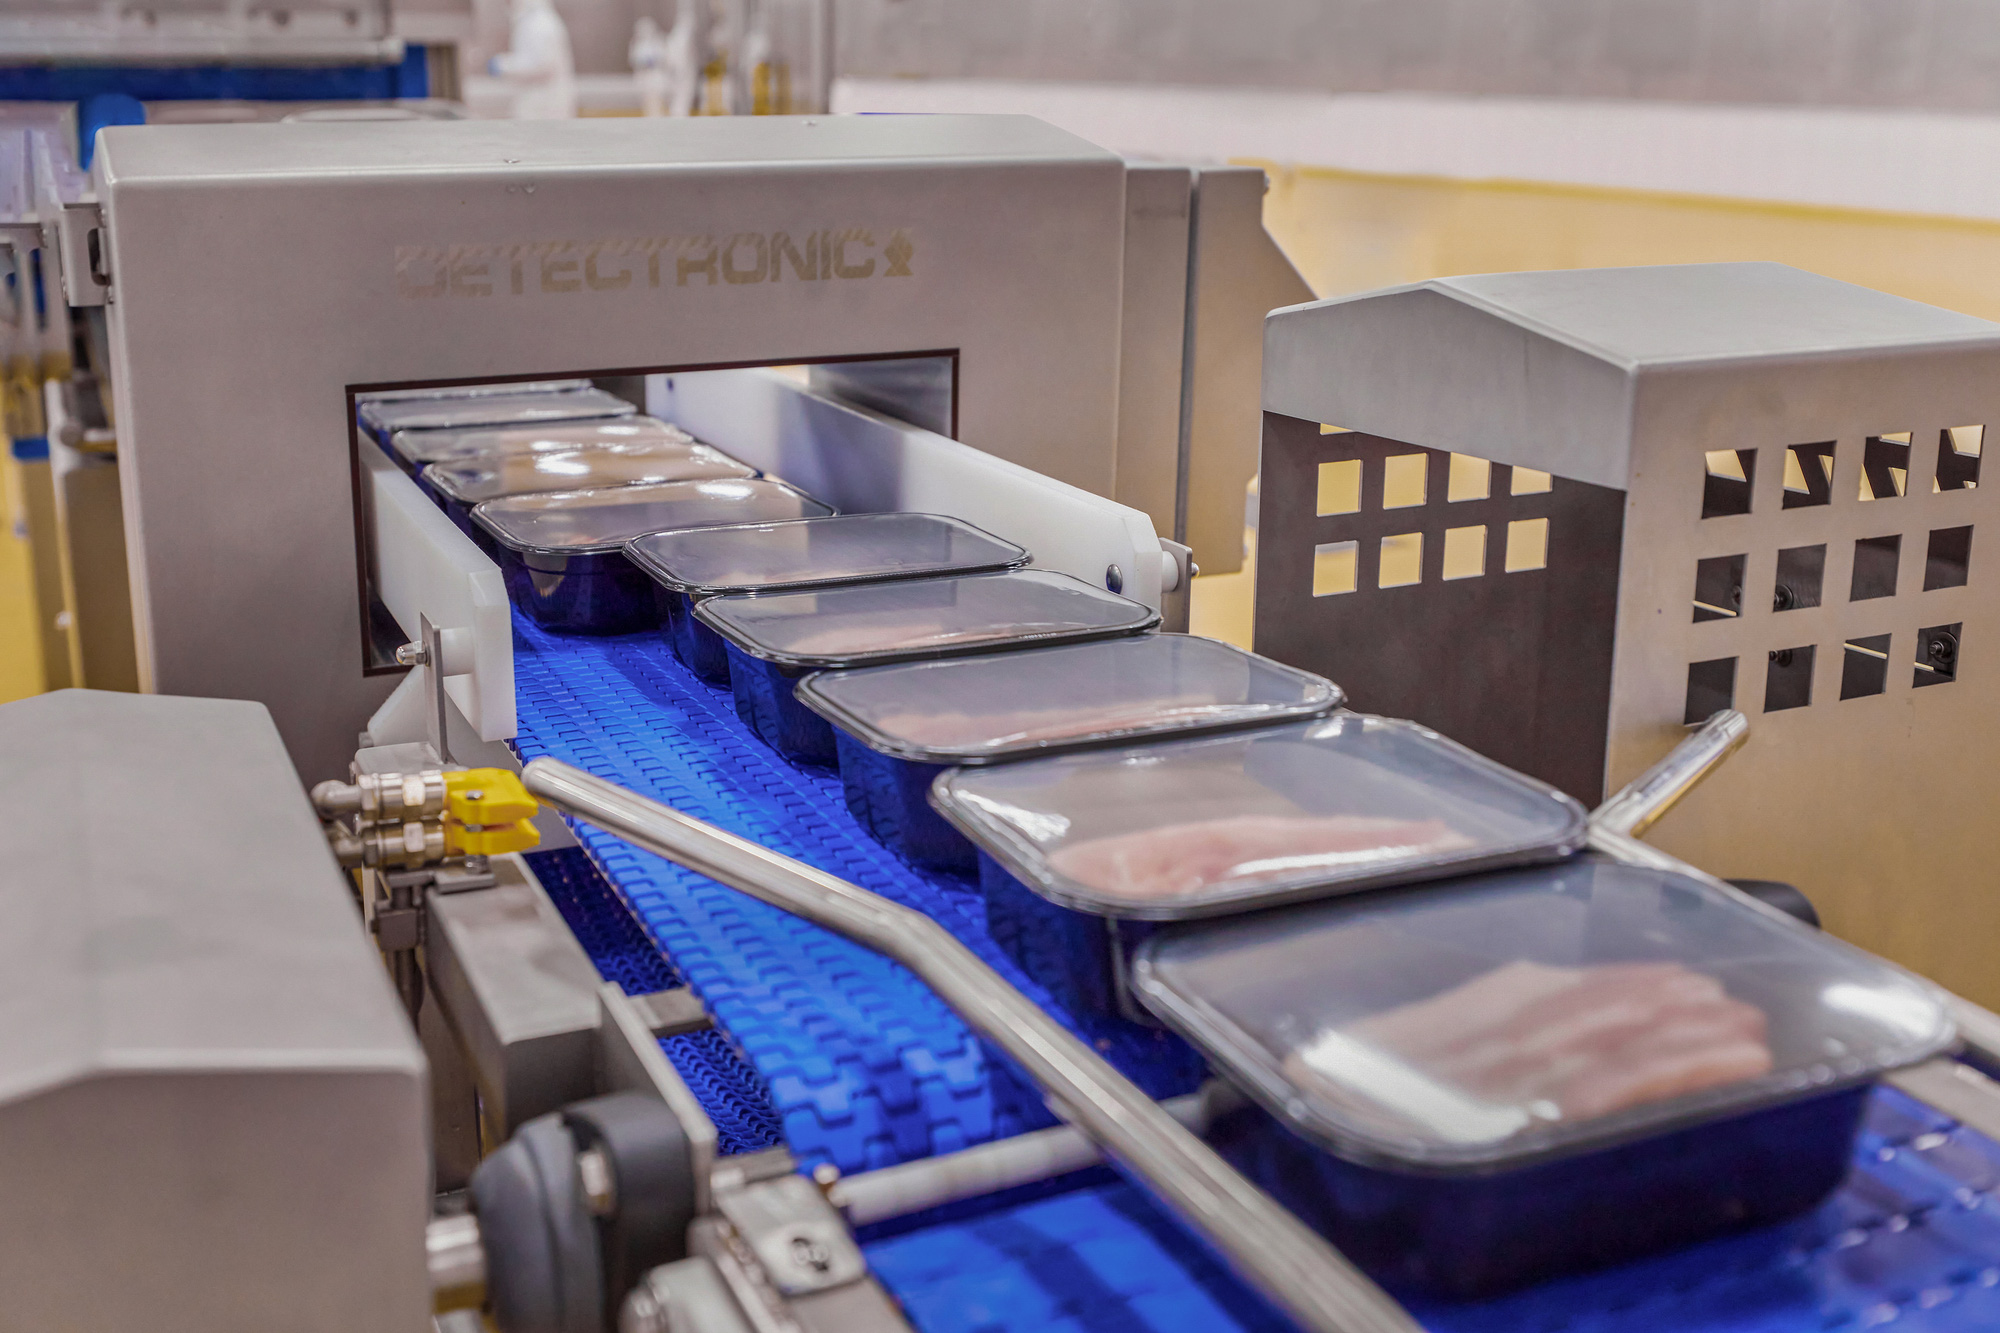 Quy trình sản xuất thịt ủ mát MEATDeli theo công nghệ thịt mát từ châu Âu.